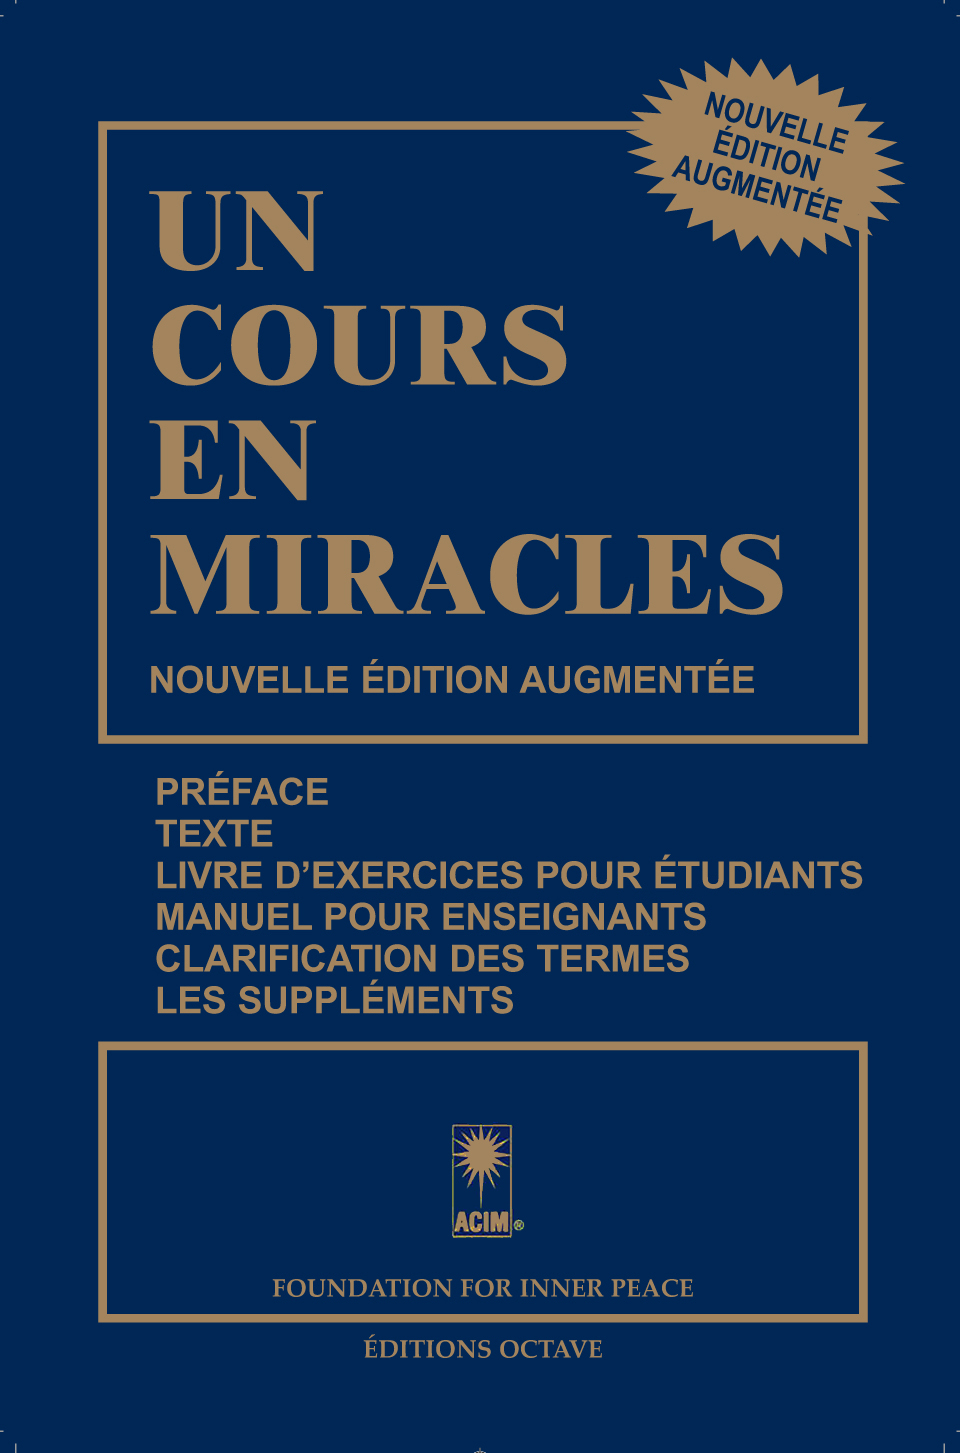 UN COURS EN MIRACLES – Nouvelle édition augmentée - Grand format/couverture souple